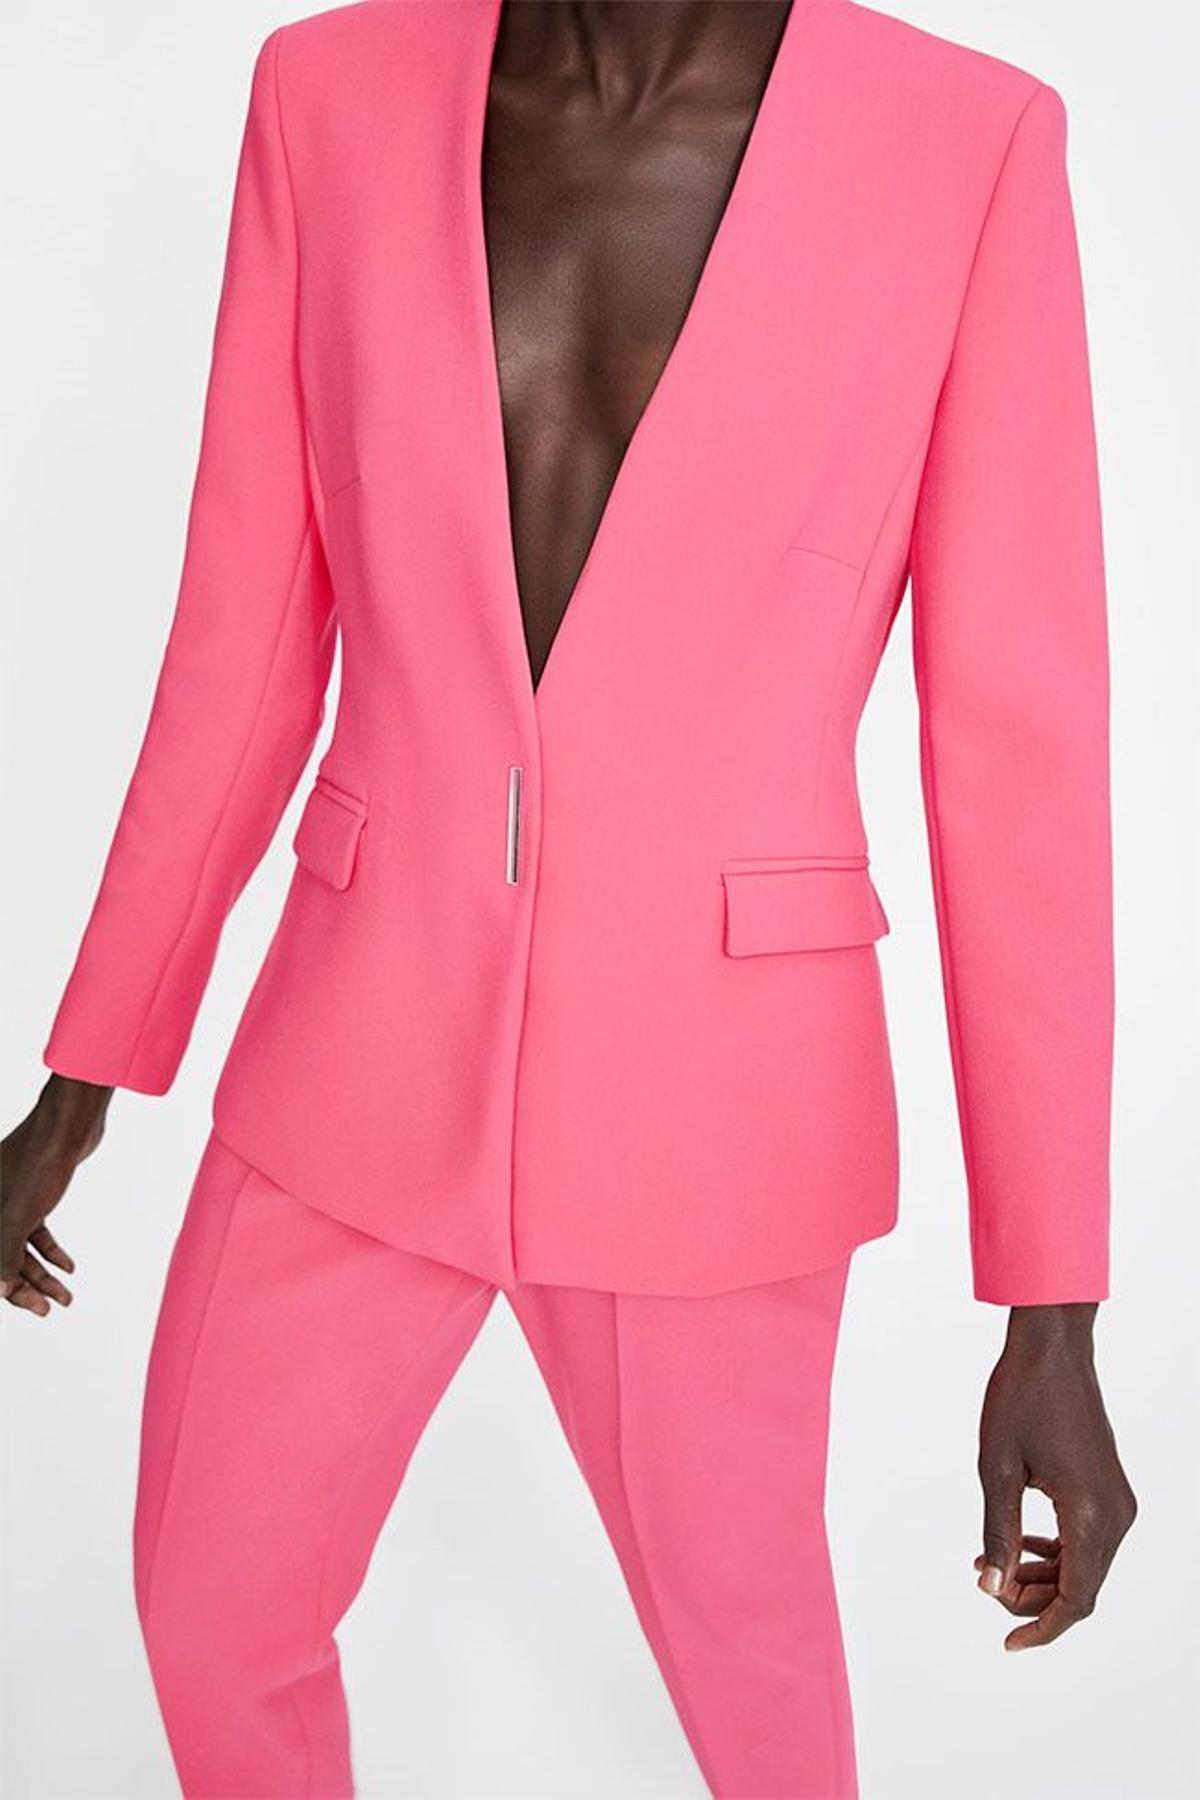 Blazer y pantalón de Zara color rosa flúor